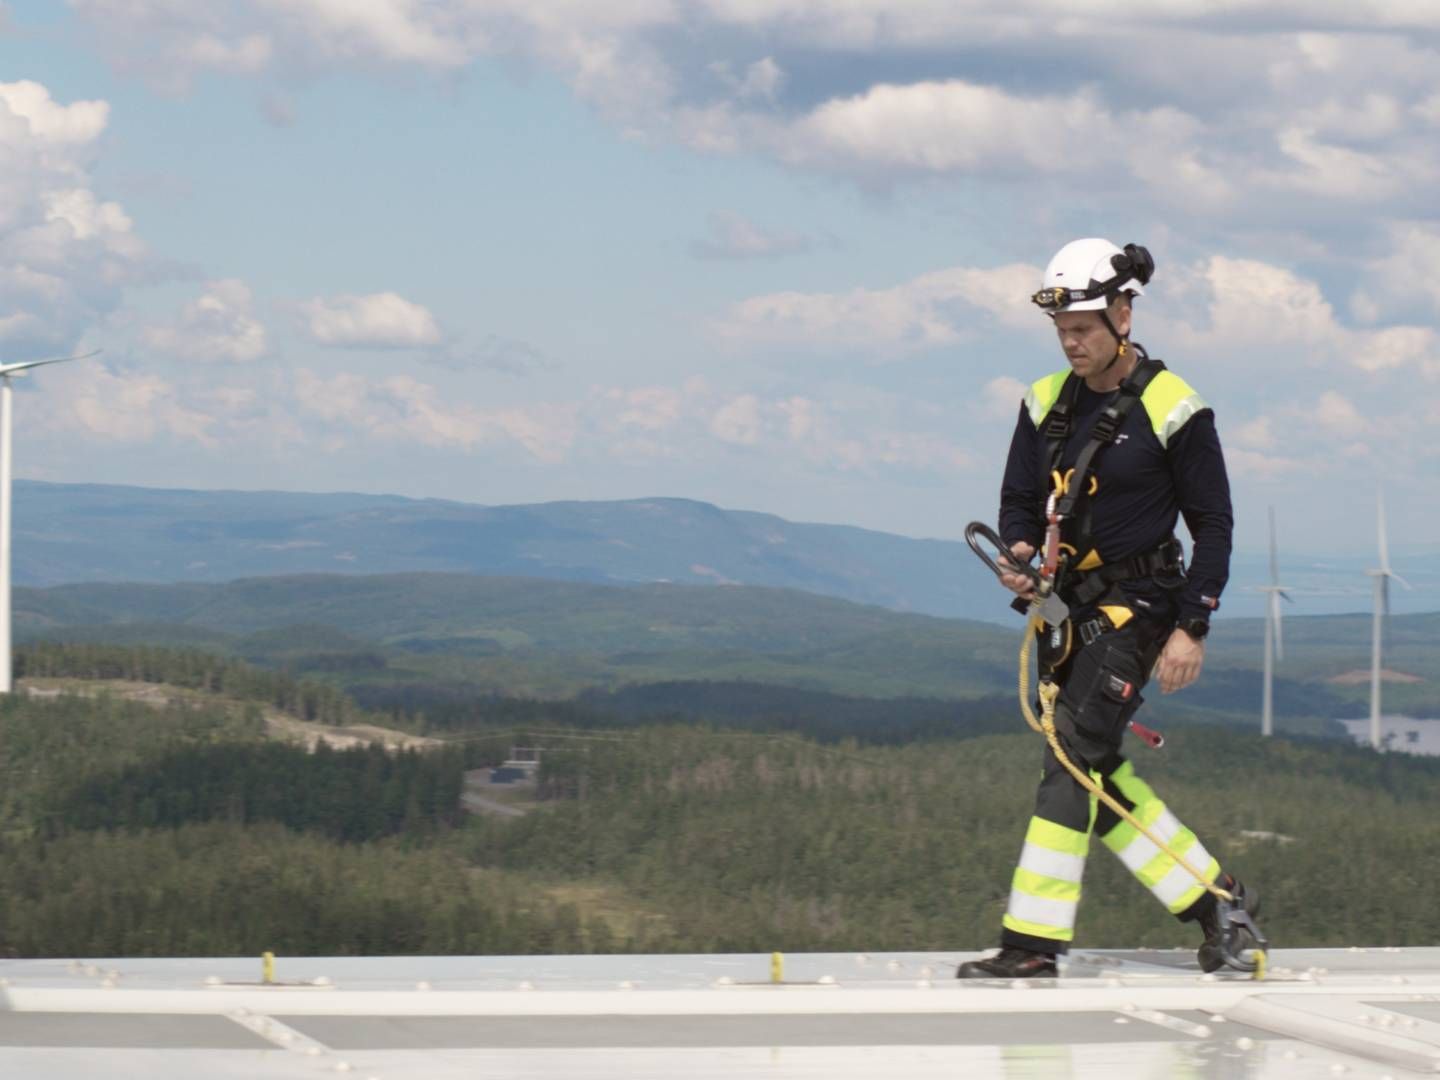 NY KRAFTPRODUKSJON: Akershus Energi vil bygge ut mer vindkraft på land, samt solkraft, for å øke den årlige kraftproduksjonen med 3 TWh frem mot 2035. | Foto: Akershus Energi